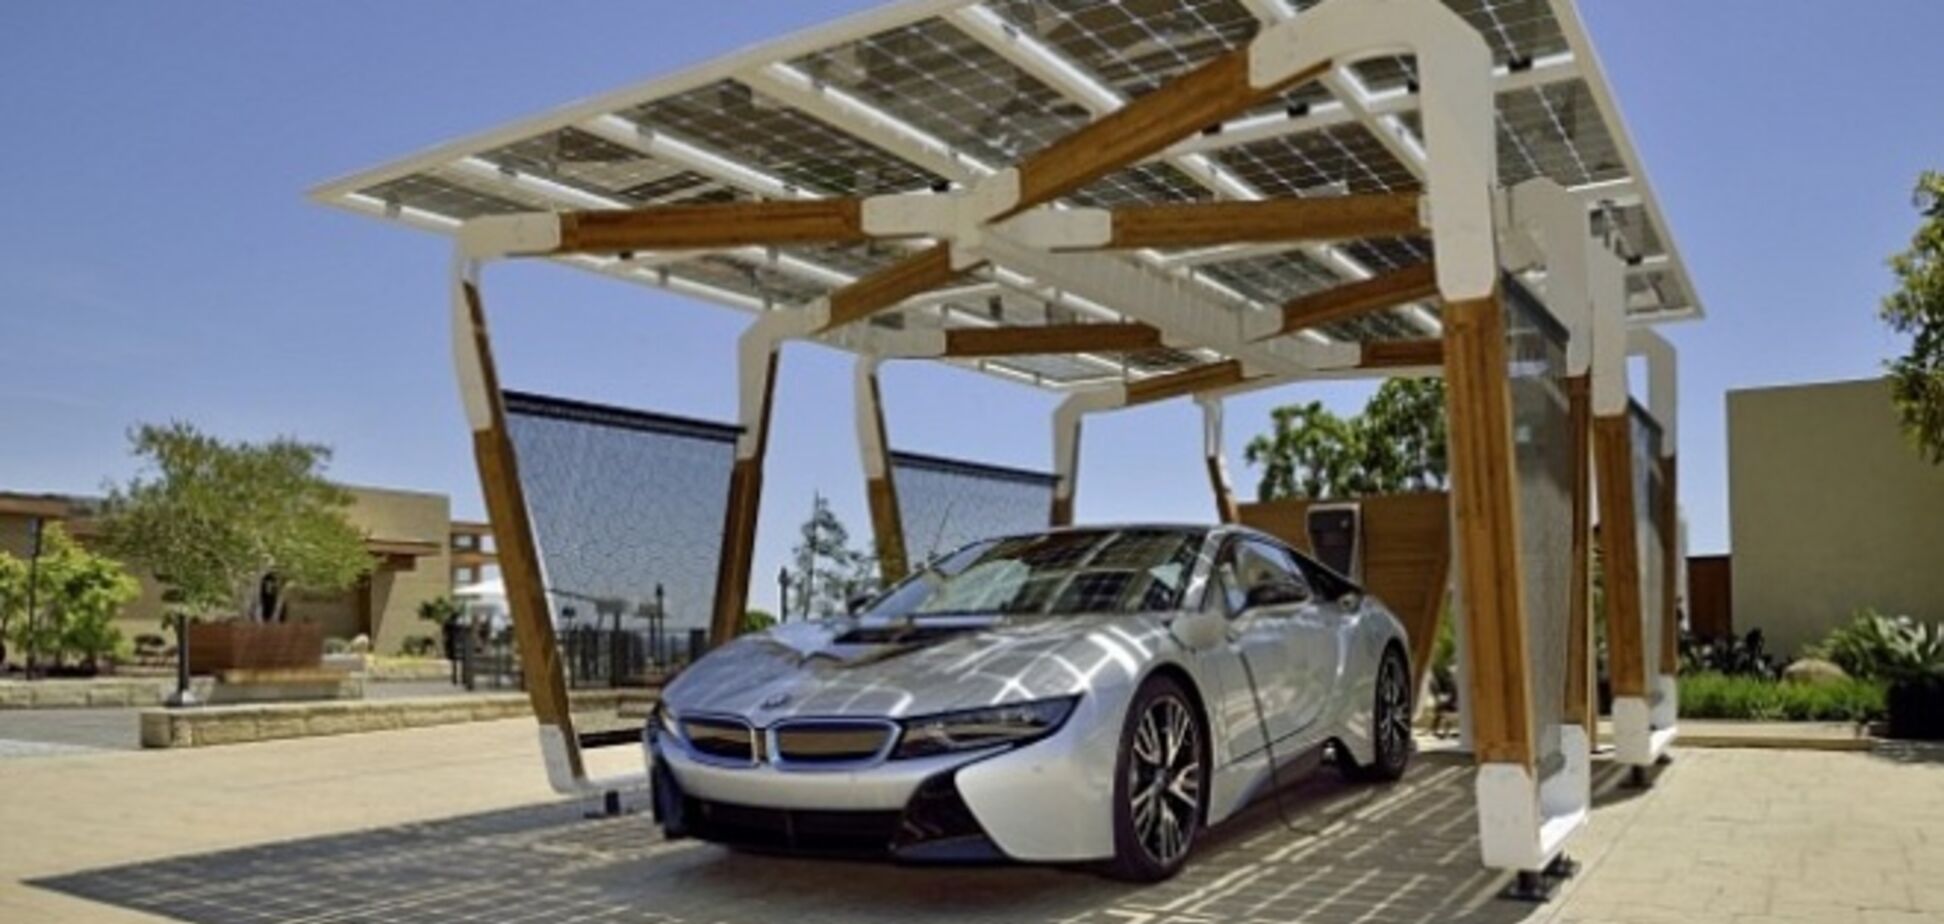 BMW презентовал зарядную станцию для электромобилей на солнечных батареях 